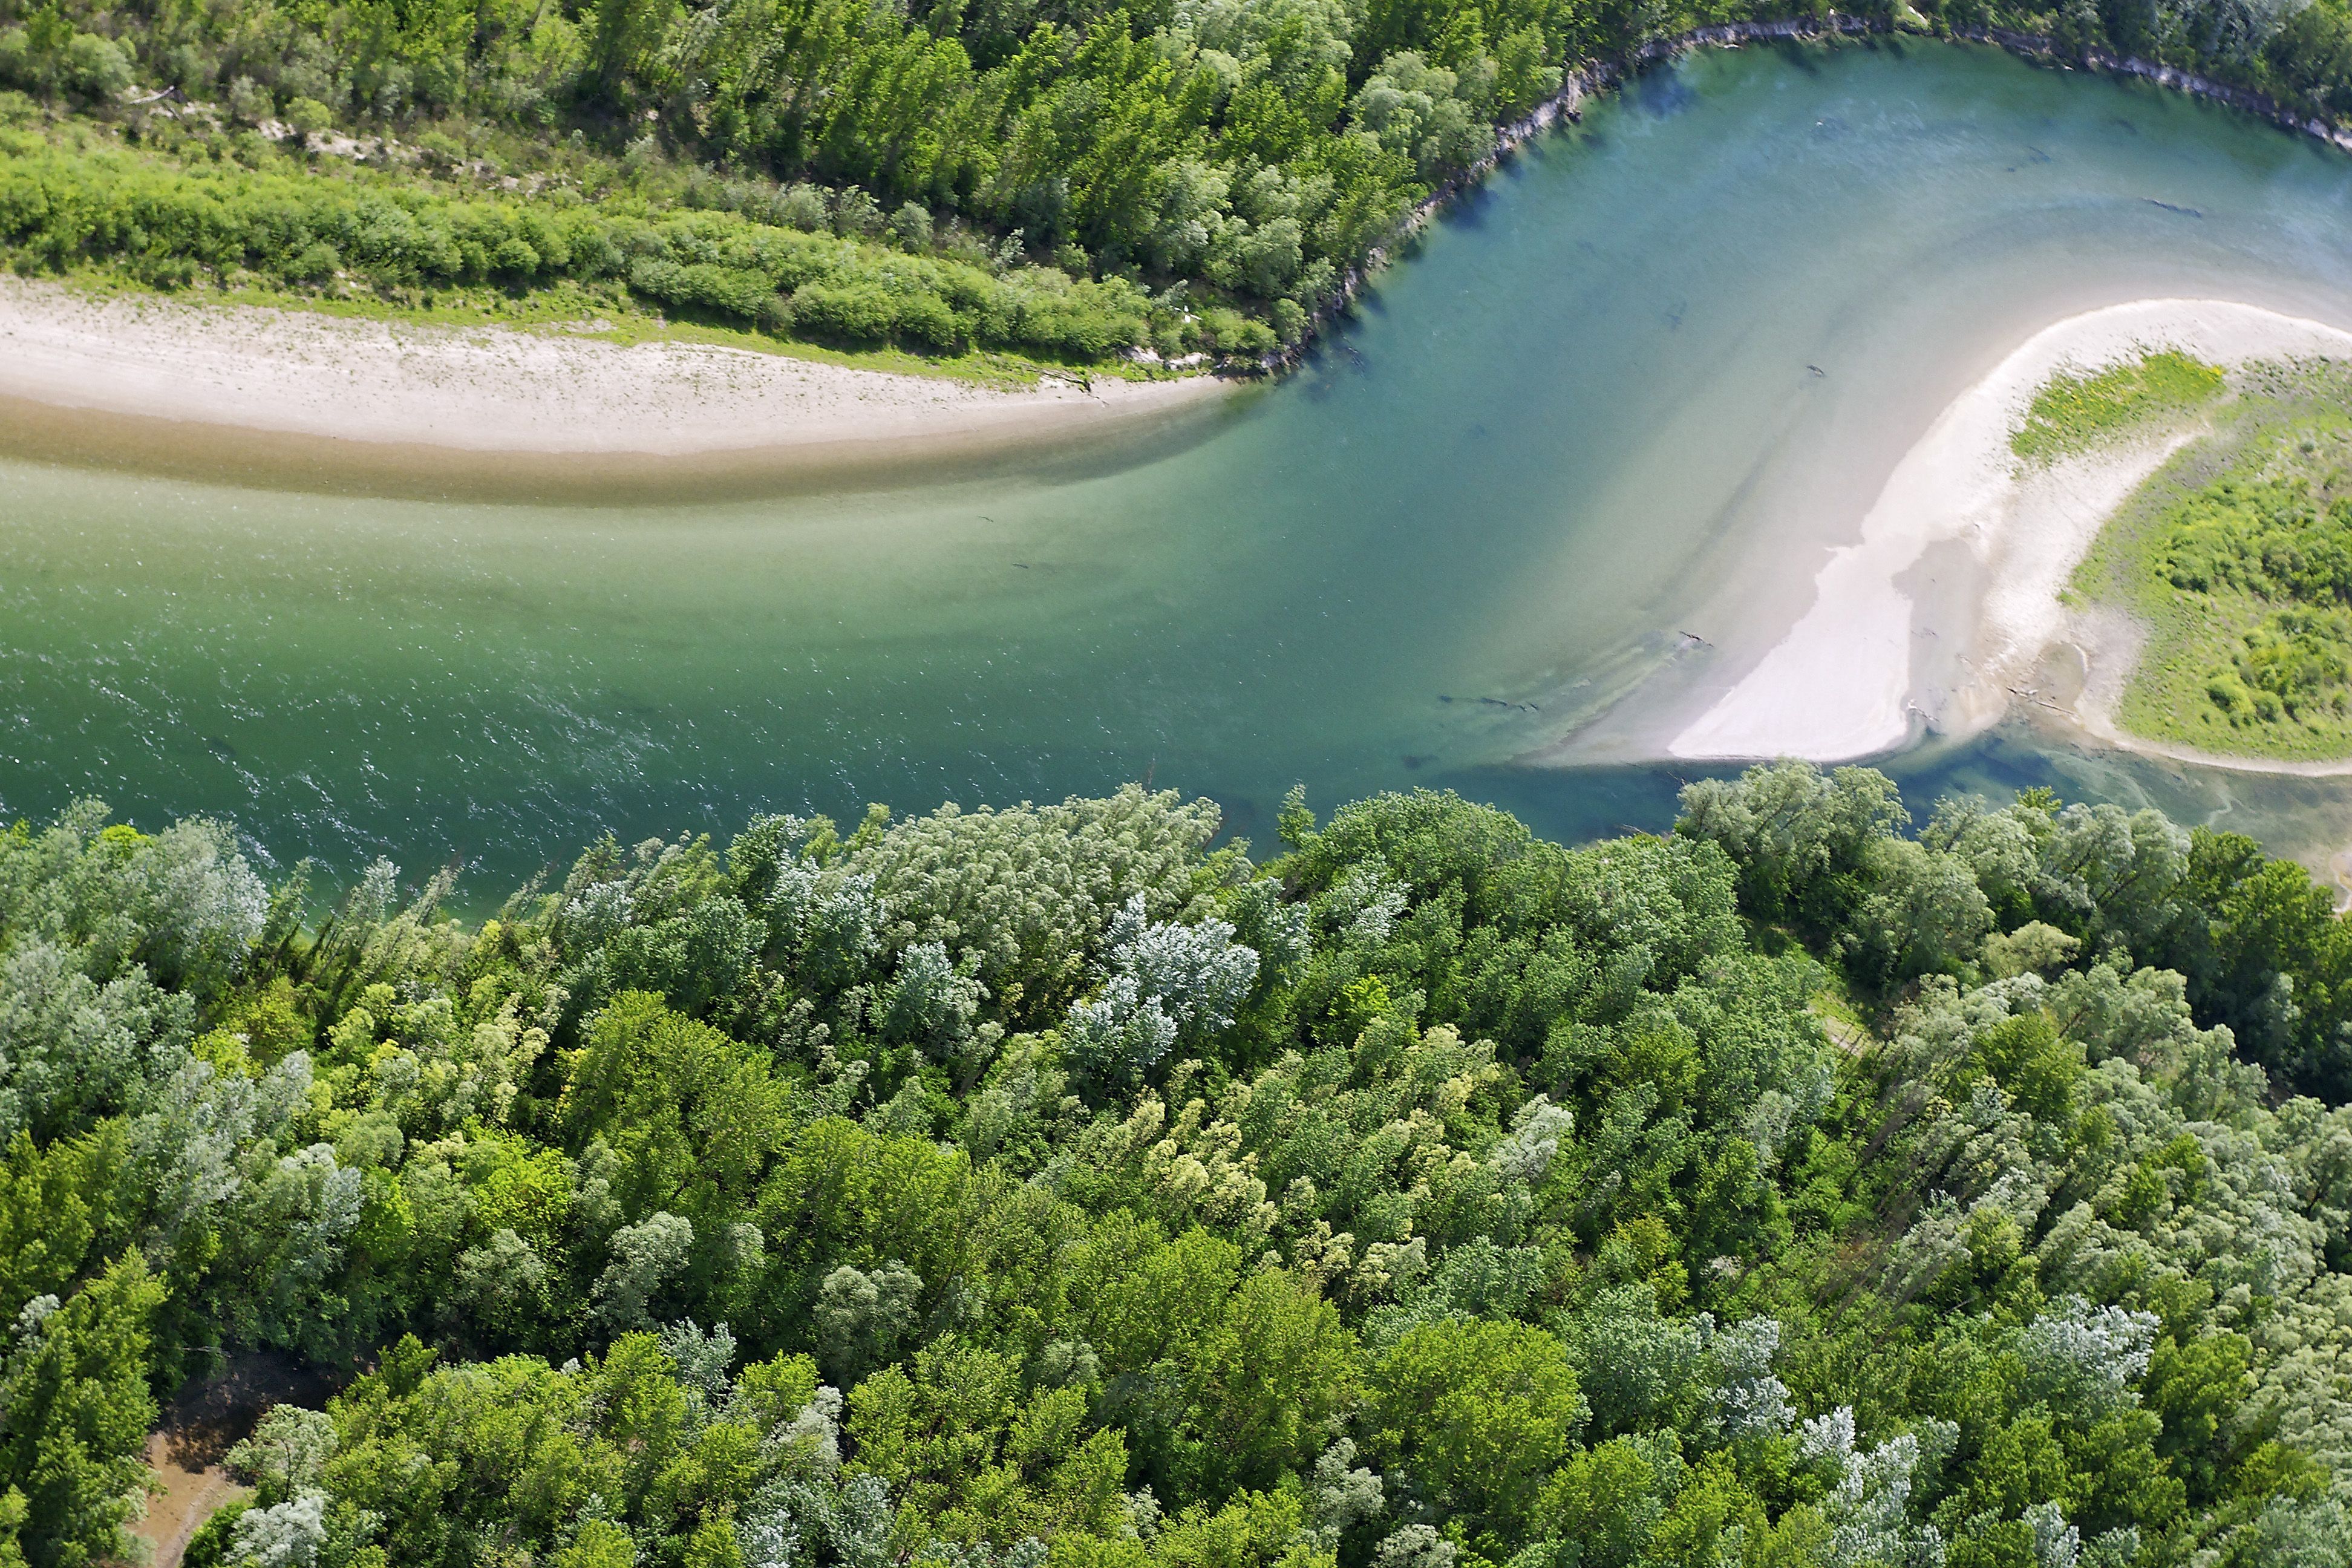 Река Драва вместе с Мурой и Дунаем 15 сентября 2021 года была объявлена ЮНЕСКО первым в мире биосферным заповедником на территории 5 стран. Общая площадь резервата — 930 000 га. Он простирается на 700 км вдоль Муры, Дравы и Дуная, охватывая Австрию, Словению, Хорватию, Венгрию и Сербию. Это делает его крупнейшей речной охраняемой территорией на континенте. Включение во Всемирную сеть биосферных заповедников ЮНЕСКО является важным вкладом в стратегии ЕС по сохранению биоразнообразия в регионе и восстановлению 25 000 км рек к 2030 году